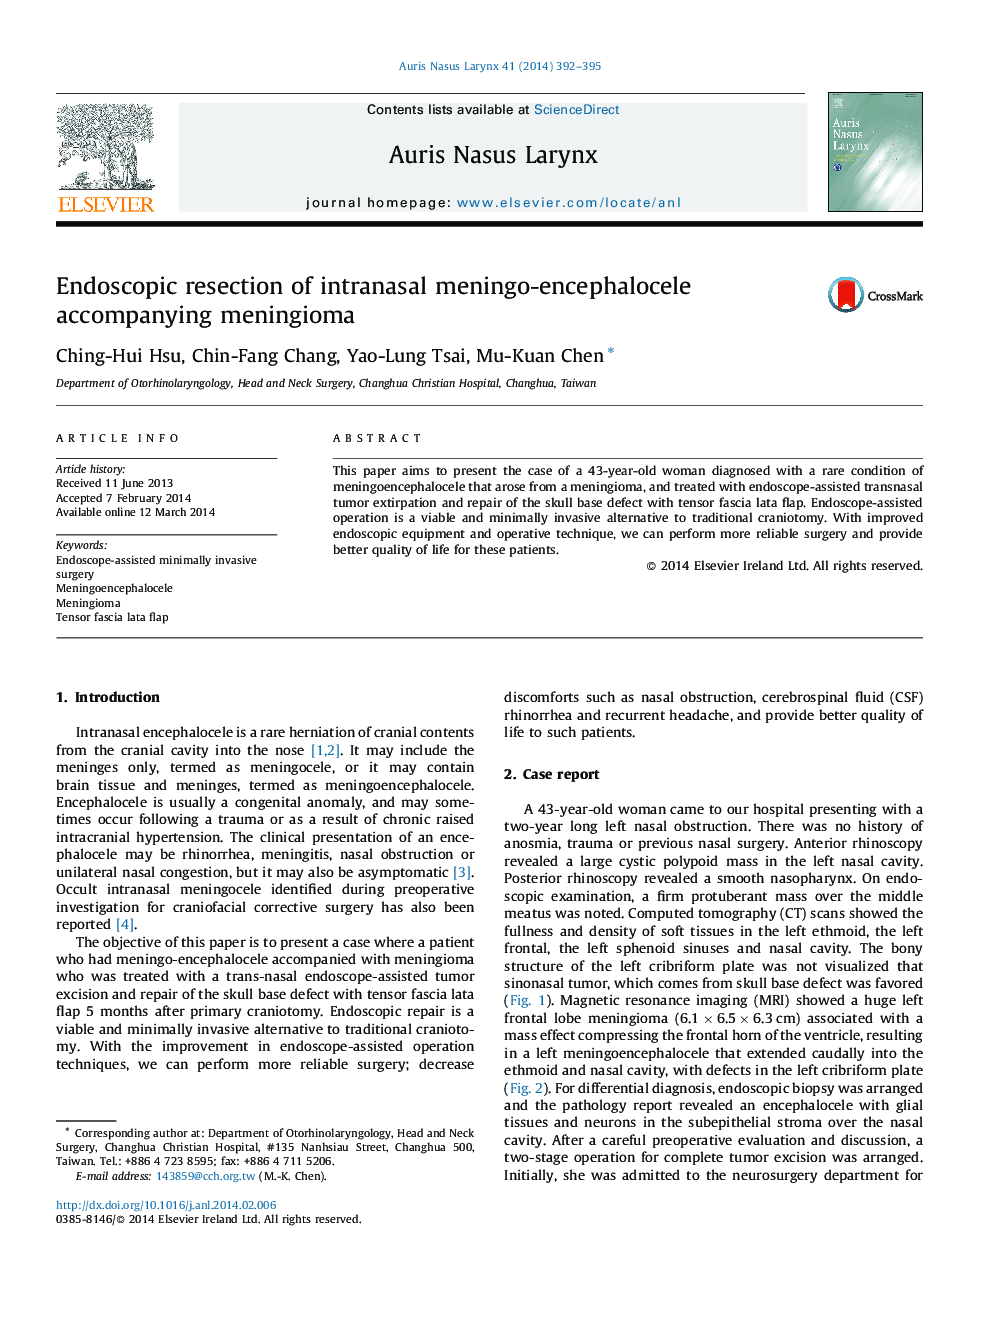 Endoscopic resection of intranasal meningo-encephalocele accompanying meningioma